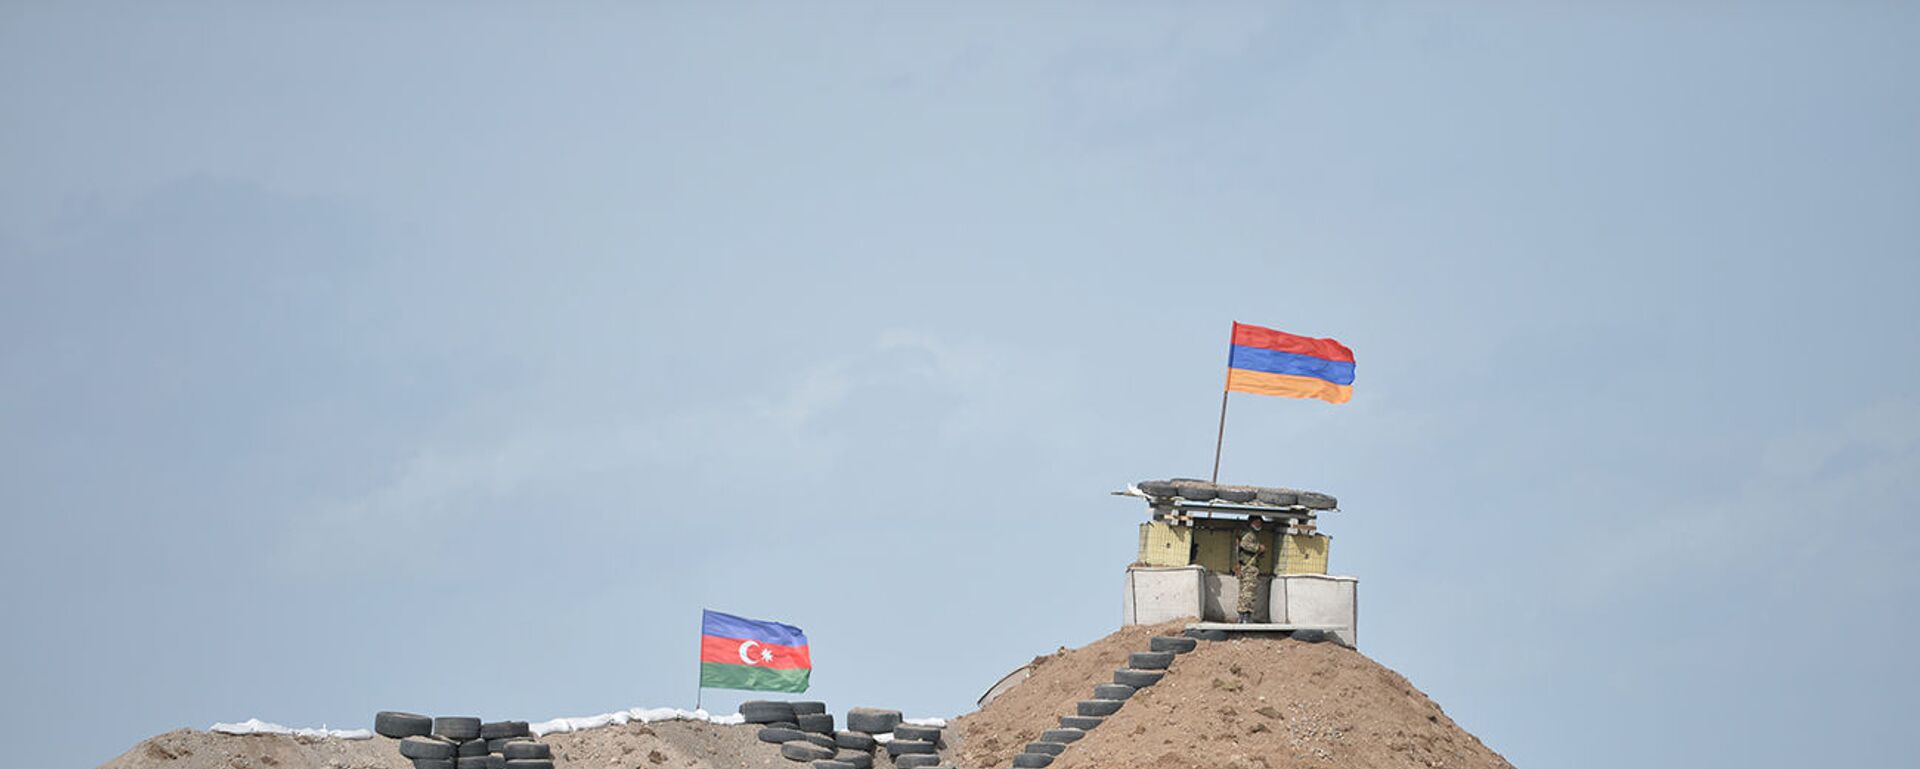 Военные посты на армянсо-азербайджанской границе - Sputnik Արմենիա, 1920, 23.06.2021